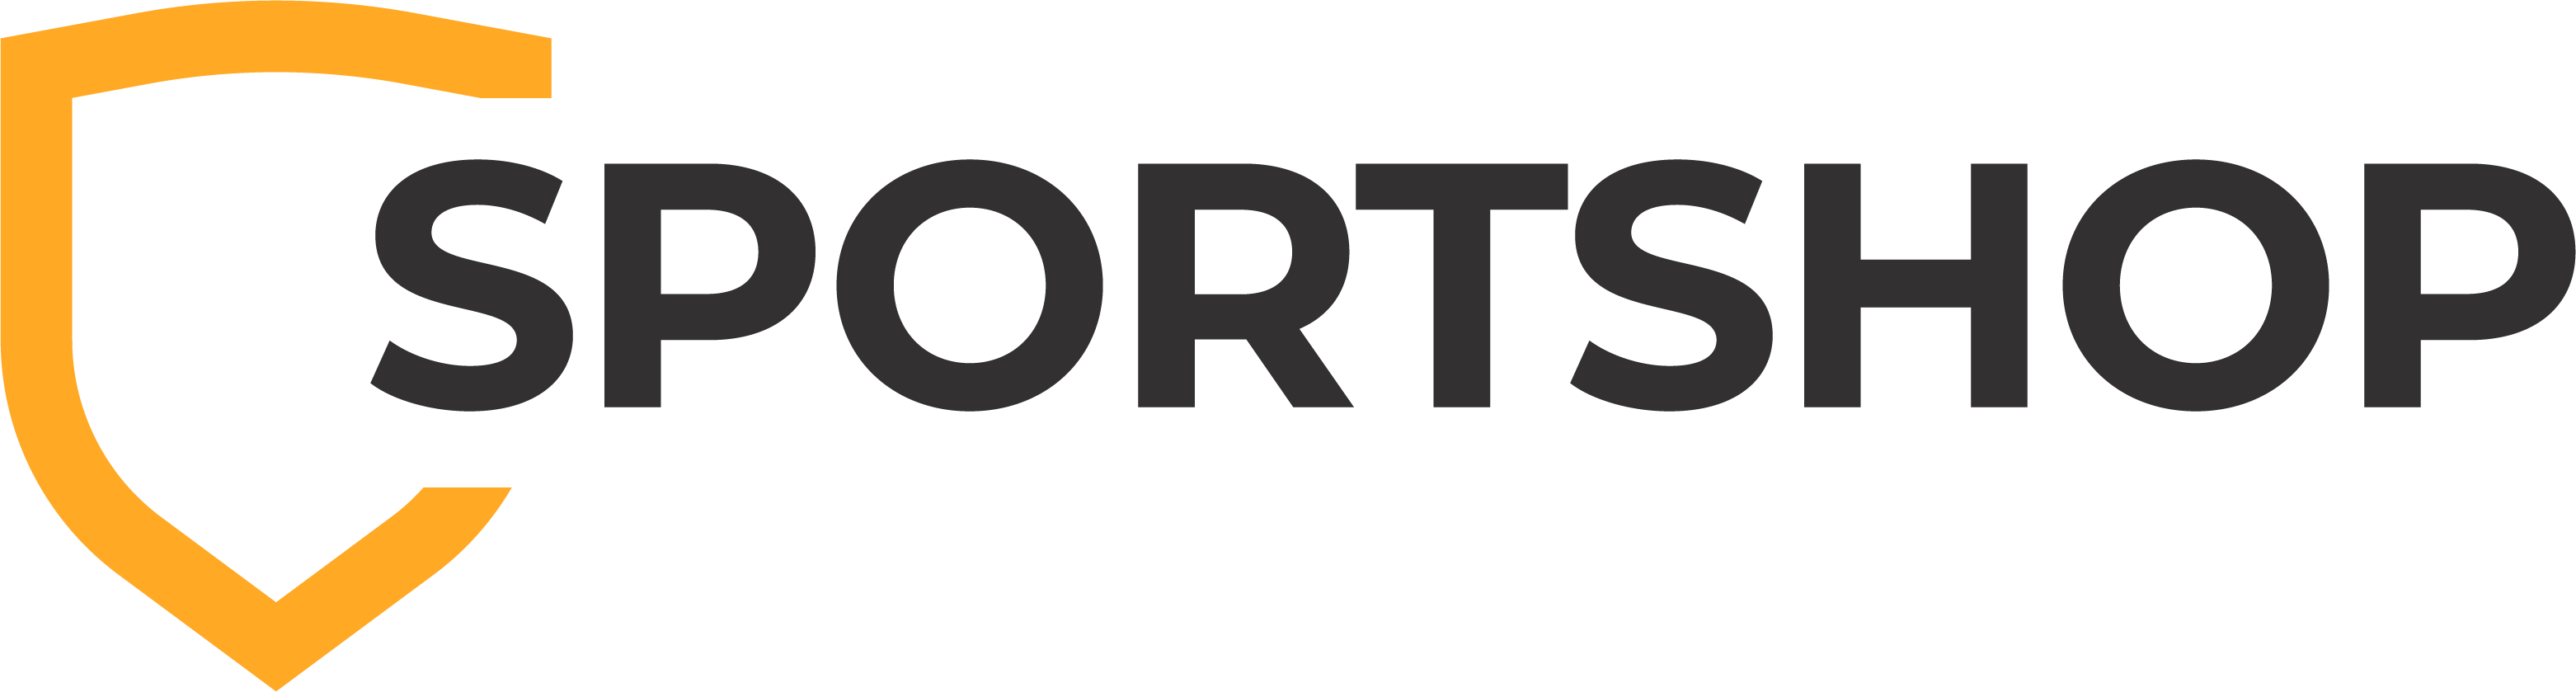 Sportshop.com.ua